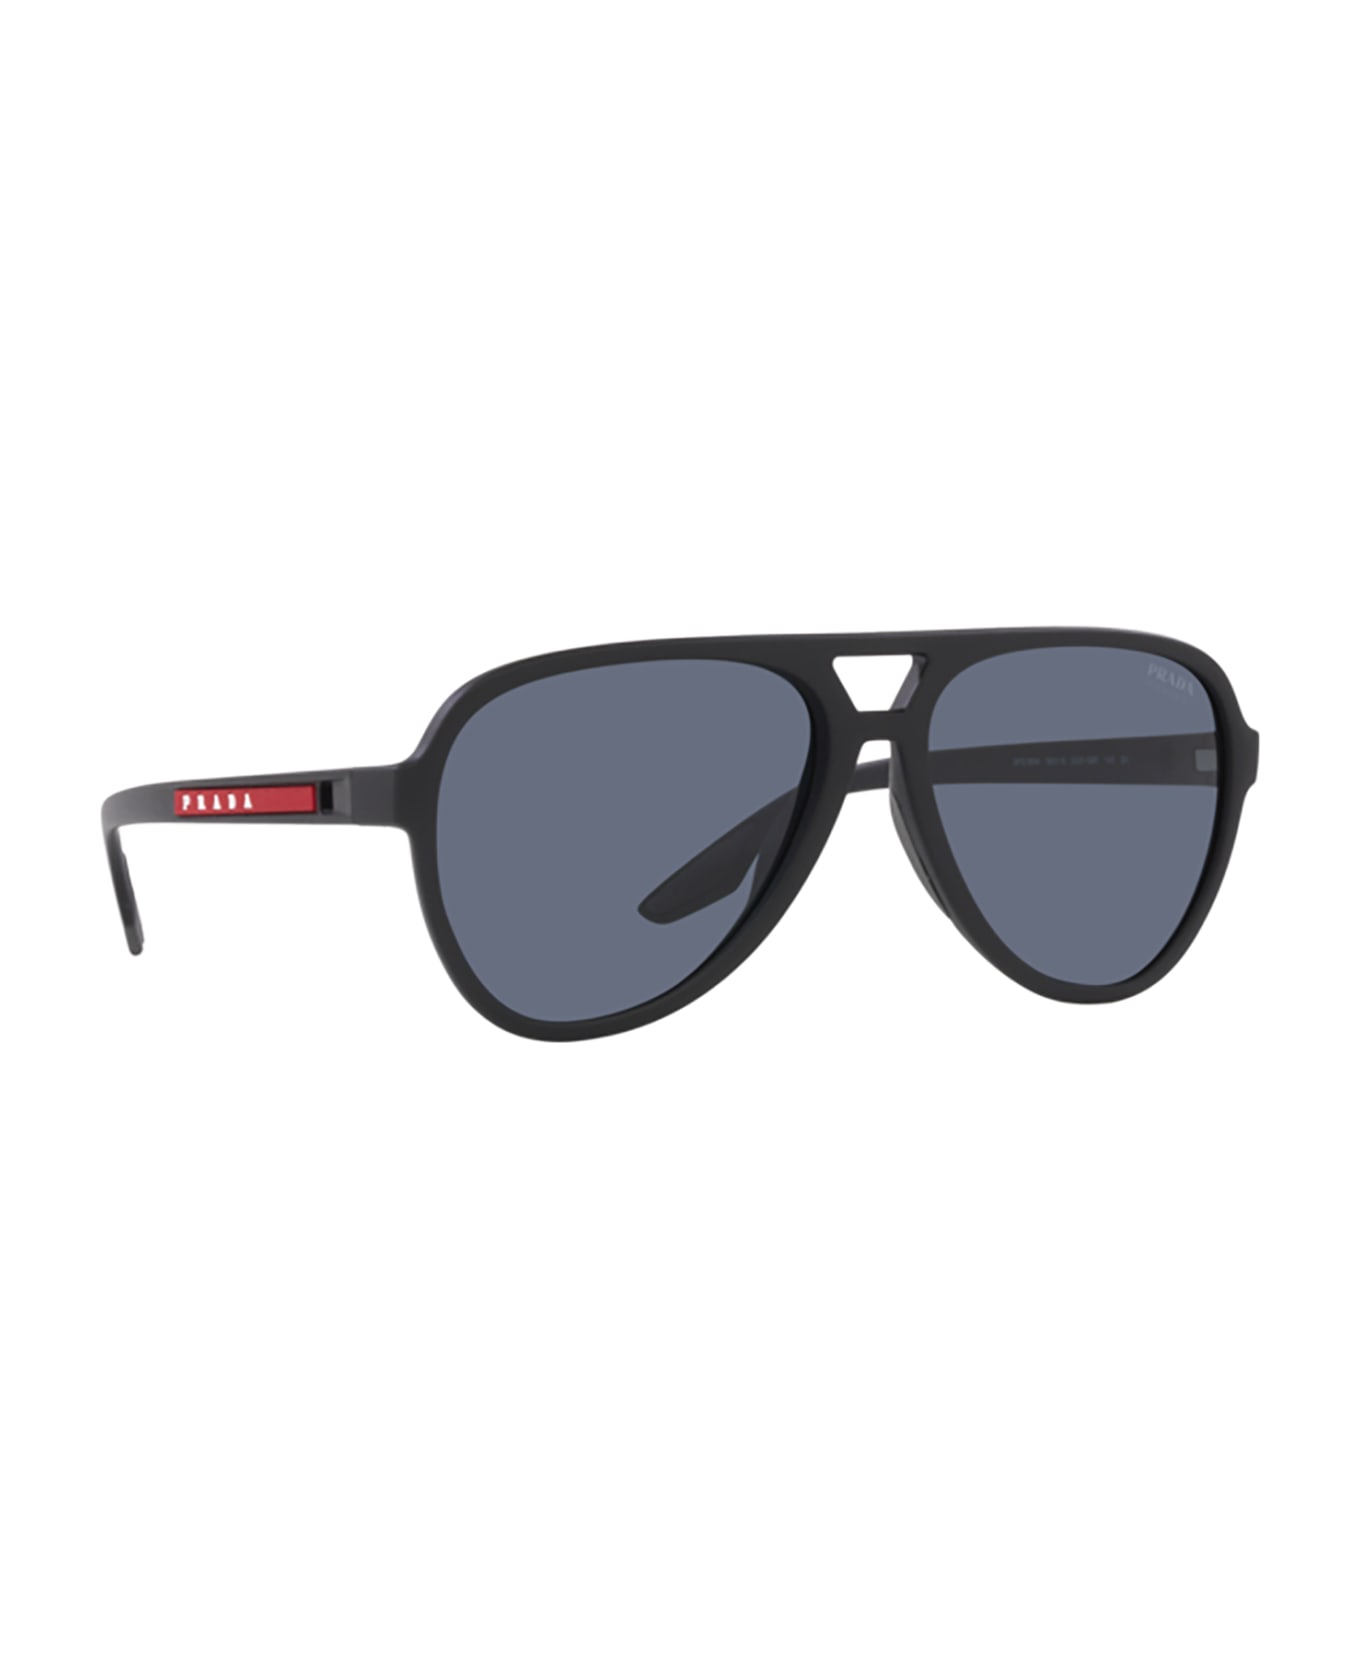 Prada Linea Rossa Ps 06ws Black Rubber Sunglasses - Black Rubber